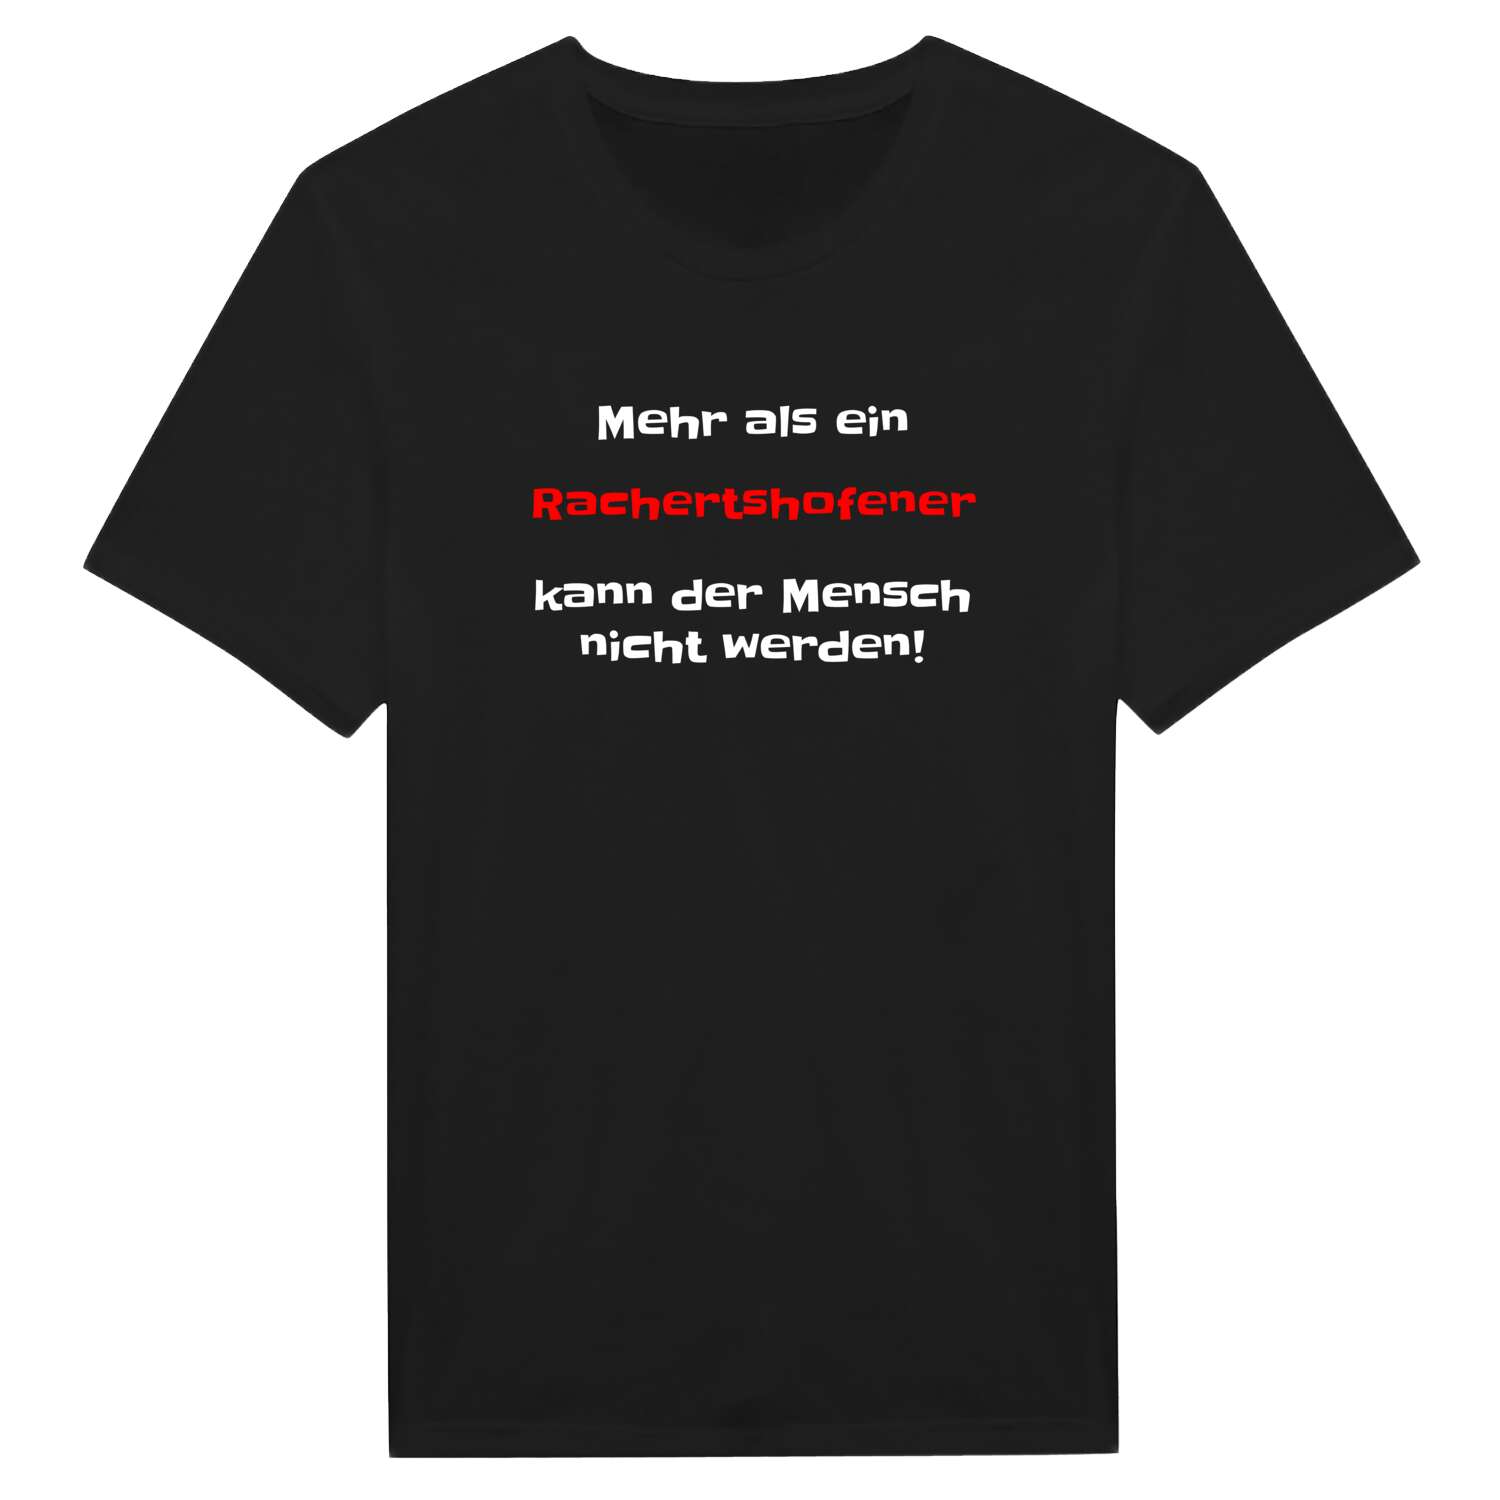 Rachertshofen T-Shirt »Mehr als ein«